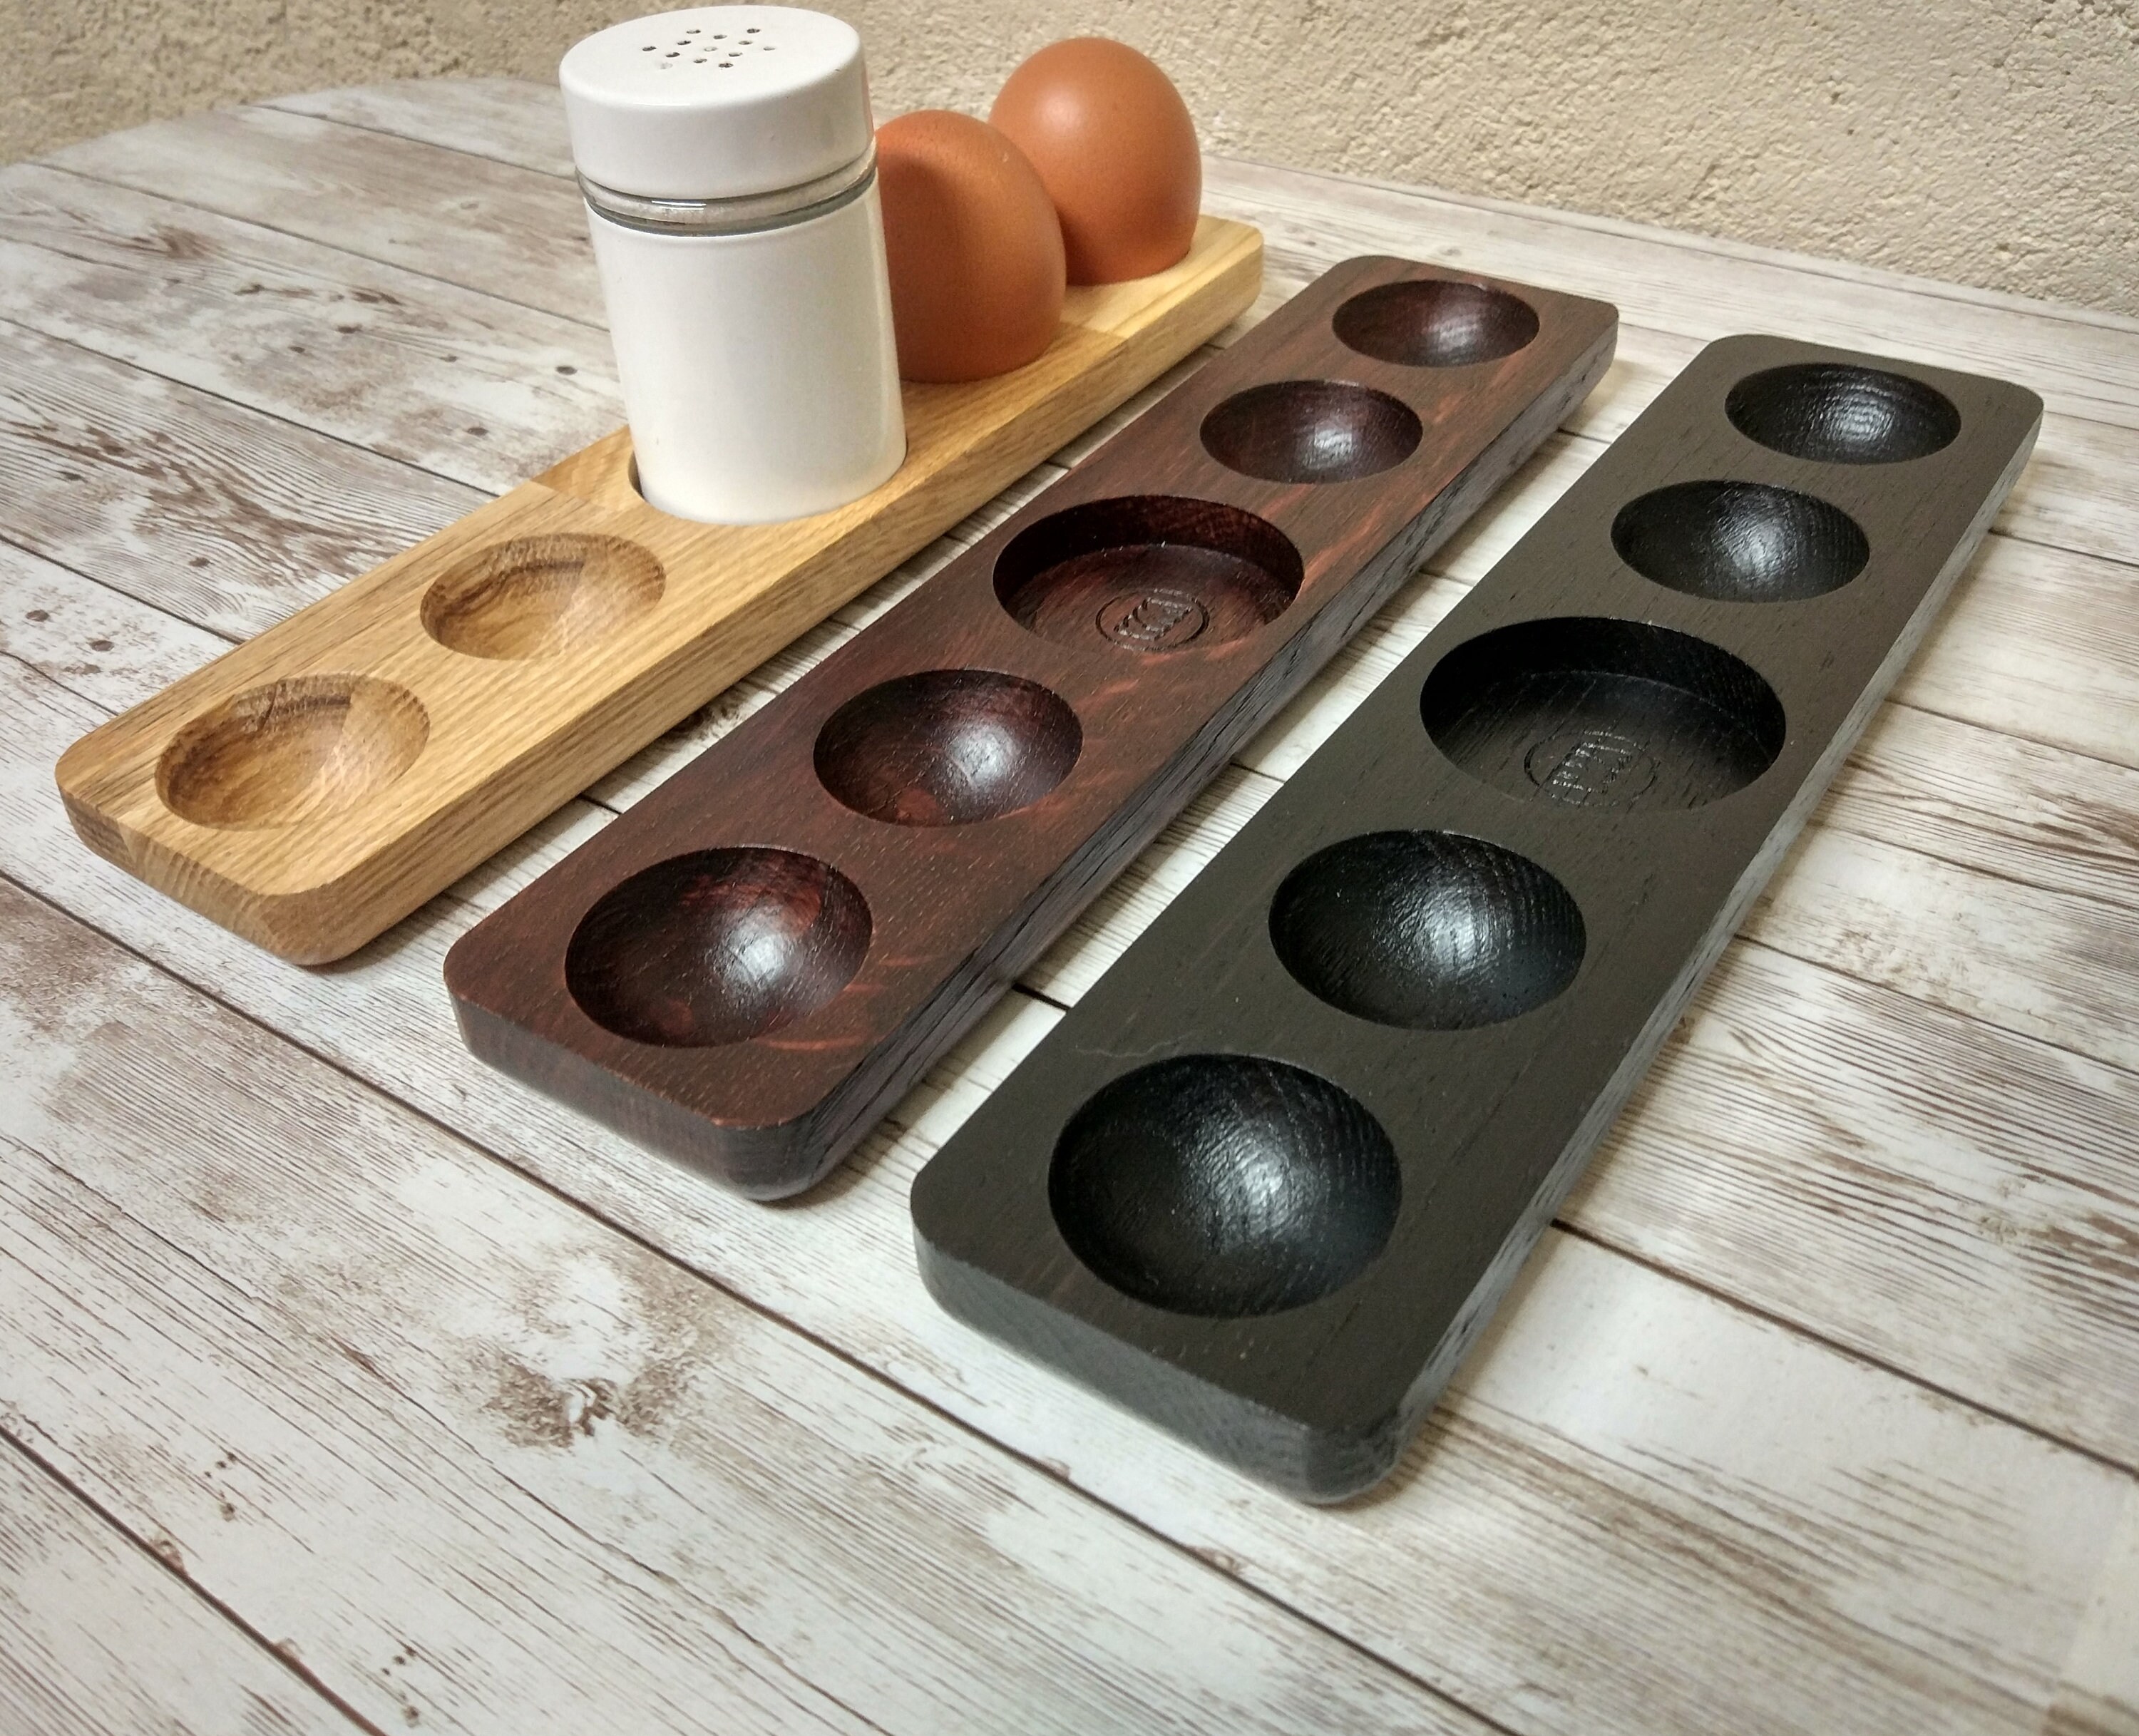 Countertop Egg Holder, Egg Holder, Egg Rack, Original Wood Egg